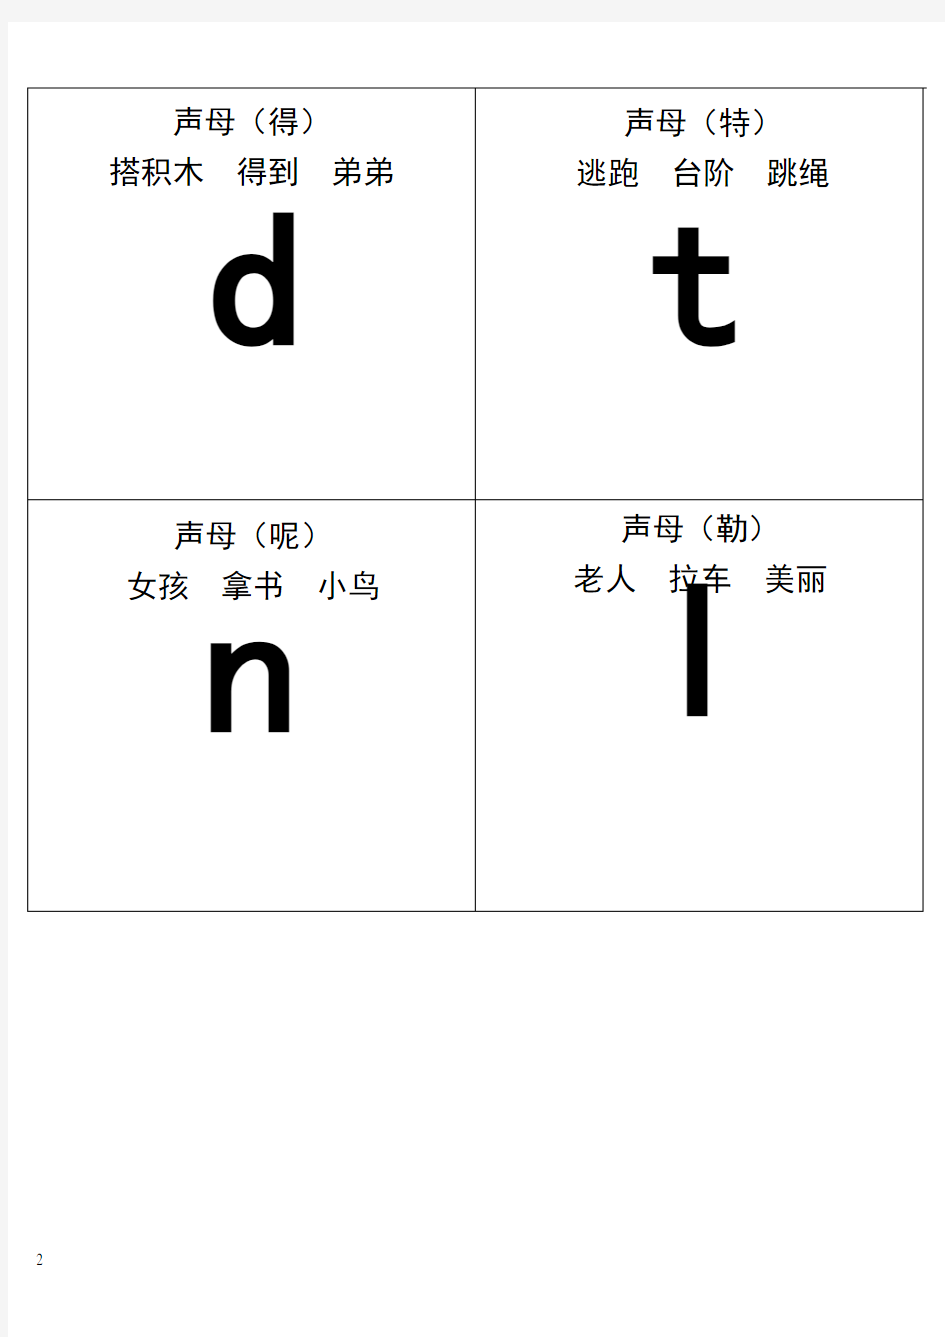 自己整理汉语拼音字母表卡片-读音(A4直接打印)